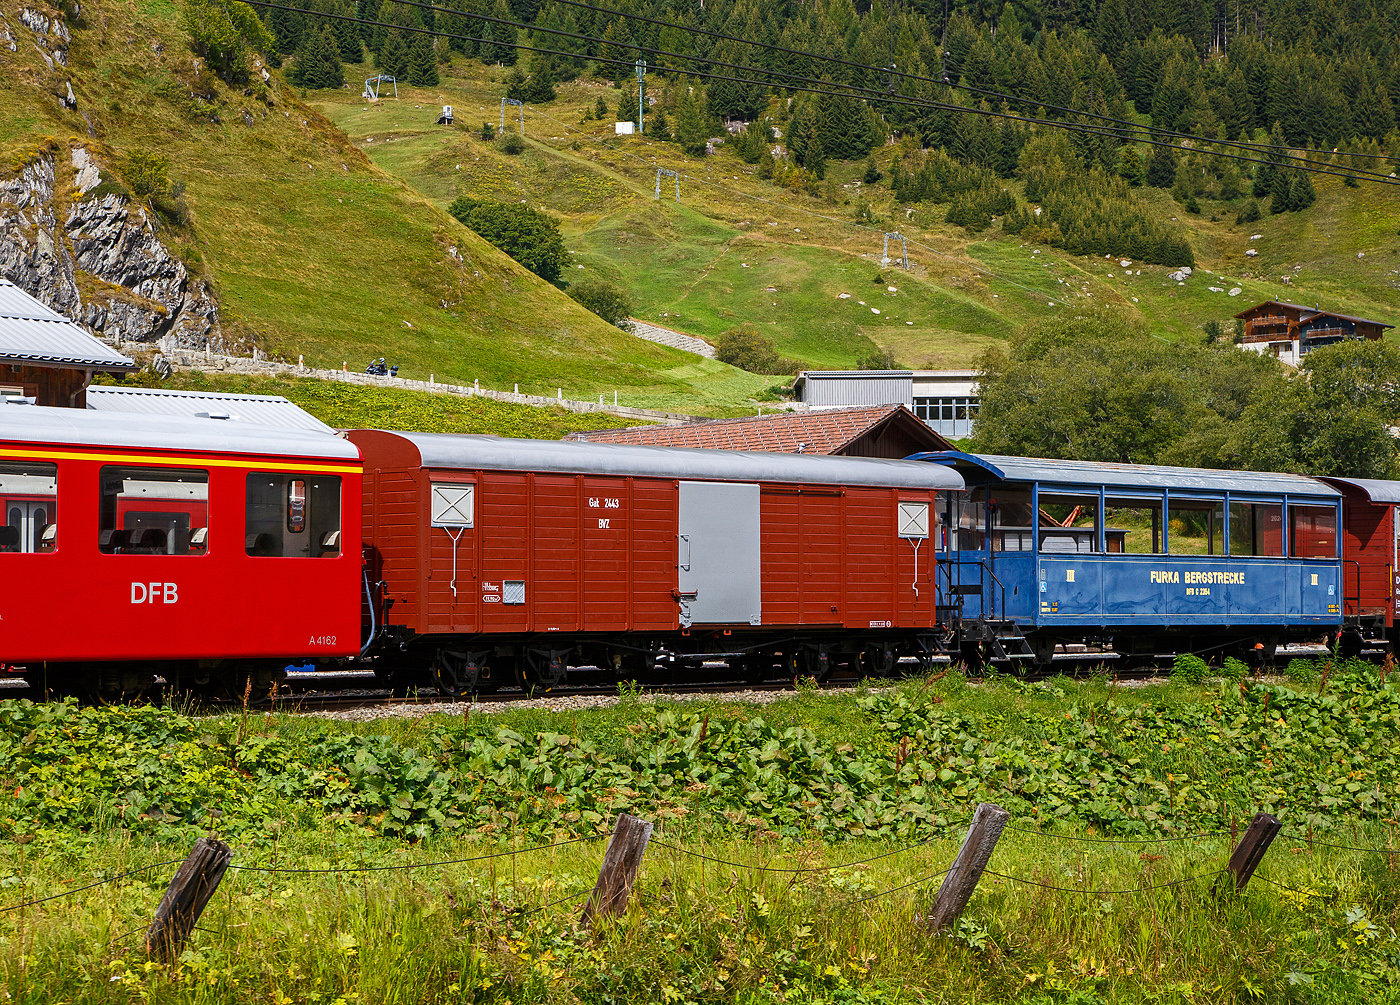 Abgestellt in Realp (Uri) von/bei der DFB Dampfbahn Furka-Bergstrecke AG am 07 September 2021, aufgenommen aus einem fahrenden MGB-Zug heraus:

Links:
Der ehemalige Gterwagen VZ K 63 der Visp Zermatt Bahn, ein schmalspurige vierachsige gedeckter Gterwagen. Der Wagen wurde 1906 von SIG (Schweizerische Industrie-Gesellschaft) in Neuhausen am Rheinfall gebaut und an die damalige VZ- Visp Zermatt Bahn geliefert. 1959 wurde er erst als BVZ K 2423 (Brig-Visp-Zermatt-Bahn), dann doch als BVZ K 2423 gefhrt und 1973 BVZ Gak-v 2443 bezeichnet. Noch vor dem Zusammenschluss am 01. Januar 2003 der BVZ mit der Furka-Oberalp-Bahn (FO) in die heutige Matterhorn-Gotthard-Bahn ging er 2002 als X 4943 zur DFB. Aktuell ist er als DFB X 4921 gefhrt, er dient der Abteilung Zugfrderung und Werksttten (ZfW) als Magazinwagen, ist aber als BVZ Gak 2443 beschriftet.  Wagen hatte ursprnglich 2 Plattformen, der Kasten war ganz aus Holz, 1965 wurde er von SIG umgebaut.

TECHNISCHE DATEN:
Hersteller: SIG
Baujahr: 1906
Spurweite: 1.000 mm (Meterspur)
Lnge ber Puffer : 11.100 mm
Lnge des Wagenkastens: 9.600 mm
Breite: 2.400 mm
Drehzapfenabstand: 6.500 mm
Achsabstand im Drehgestell: 1.400 mm
Eigengewicht:  10,8 t (angeschrieben 11.320 kg)
Ladegewicht:  10 t
Ladeflche: 22,4 m (angeschrieben 19,9 m)
Ladevolumen: 43,0 m
Zul. Hchstgeschwindigkeit: 55 km/h
Bremsen: 	automatische Vakuum- und Handbremse

Rechts:
Der blaue zweiachsige Aussichtswagen C 2354 mit drei Rollstuhlpltzen.  Der Wagen wurde 1892 von SIG (Schweizerische Industrie-Gesellschaft) in Neuhausen am Rheinfall, als dreiachsiger 2.Klasse Personenwagen JS B  1173. fr die damalige Jura-Simplon-Bahn (JS) gebaut und geliefert. Mit der Verstaatlichung der JS zu den Schweizerischen Bundesbahnen (SBB) am 1. Mai 1903 wurde er dann zum SBB Brnig B 223, ab 1920 als C 653 und ab 1994 SBB Brnig X 9954 gefhrt. Im Jahr 1971 wurde er ausgemustert und gin an die VFDK ab 1985 BDB (Ballenberg Dampfbahn) im Jahre 1992 ging er dann an die DFB. Zwischen 1992 und 1995 erfolgte ein Neuaufbau, die Mittelachse wurde entfernt (Achsabstand 6.000 mm), dabei wurde aber jegliche historische Substanz zerstrt. Die Inbetriebnahme bei der DFB erfolgte 1995 als Aussichtswagen C 2354.  Der Aussichtswagen  wurde 2005 von der Wagenwerkstatt Aarau fr drei Rollstuhlpltze und den Rollstuhl-Verlad umgebaut. Der Wagen besitzt Seitenrolls, verglaste Stirnfenster und seitliche ffnungen (herausnehmbare Seitenwandstcke) fr den Rollstuhl-Verlad mittels Hebelift. 

Bereits ab 2020 wurde der Wagen von der DFB zum Verkauf angeboten, ansonsten sollte er verschrottet werden. So ist dies wohl eines der letzten Bilder von ihm, denn er wird aktuell nicht mehr gelistet.

TECHNISCHE DATEN:
Hersteller: SIG
Baujahr: 1892
Spurweite: 1.000 mm (Meterspur)
Lnge ber Puffer: 10.100 mm
Achsstand: 6.000 mm
Eigengewicht 7,1 t
Sitzpltze: 36 und 3 Rollstuhlpltze.
Stehpltze: 16
Beleuchtung: elektrisch ab Batterie
Heizung: Durchgang
Bremsen: Vakuum- und Handbremse
Bemerkung: letzte Revision R1 Mai 2017	
